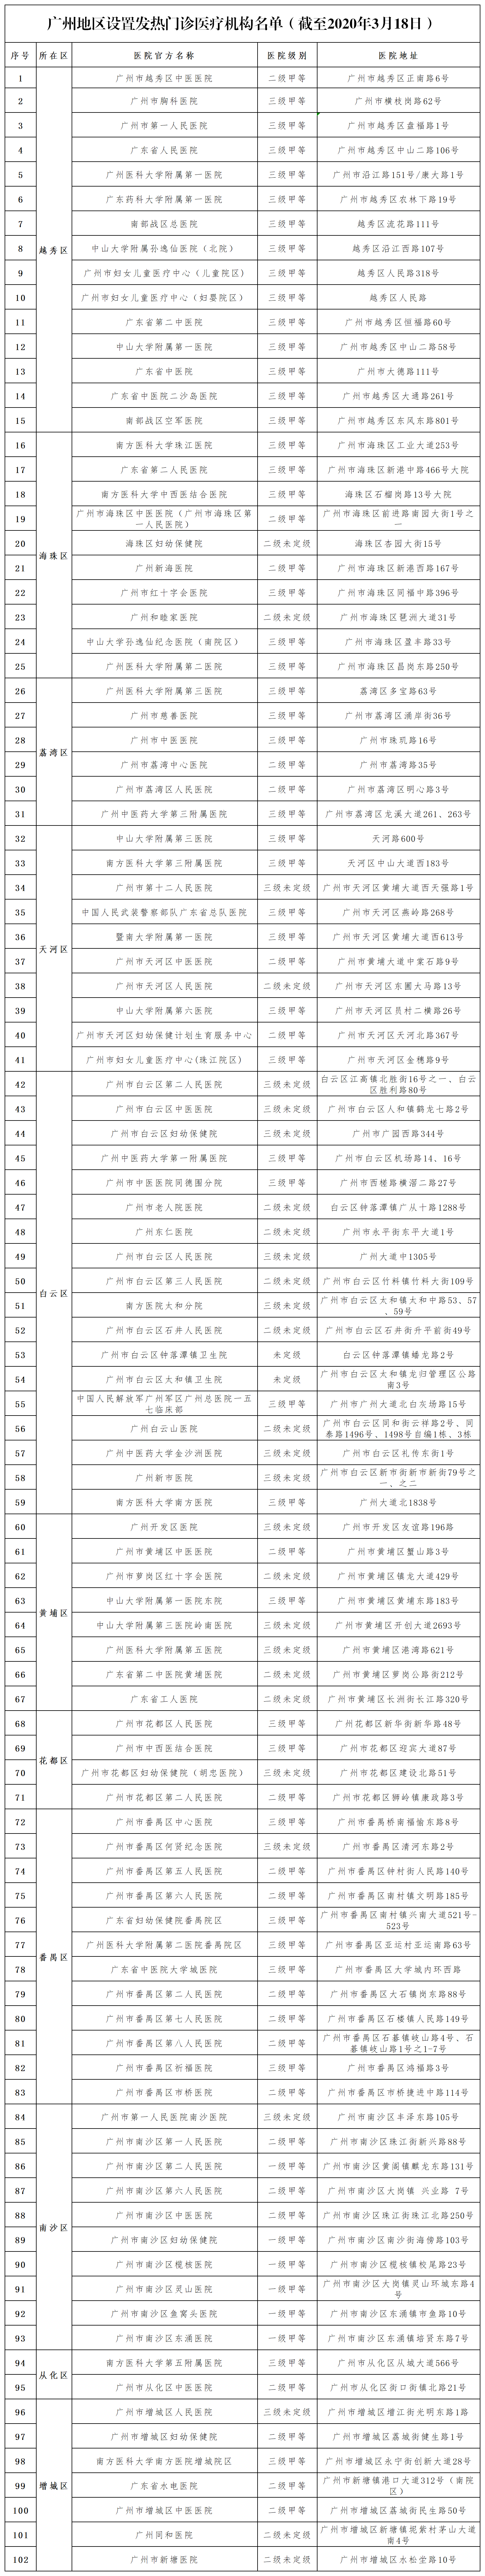 广州地区设置发热门诊医疗机构名单（截至2020年3月18日）.png